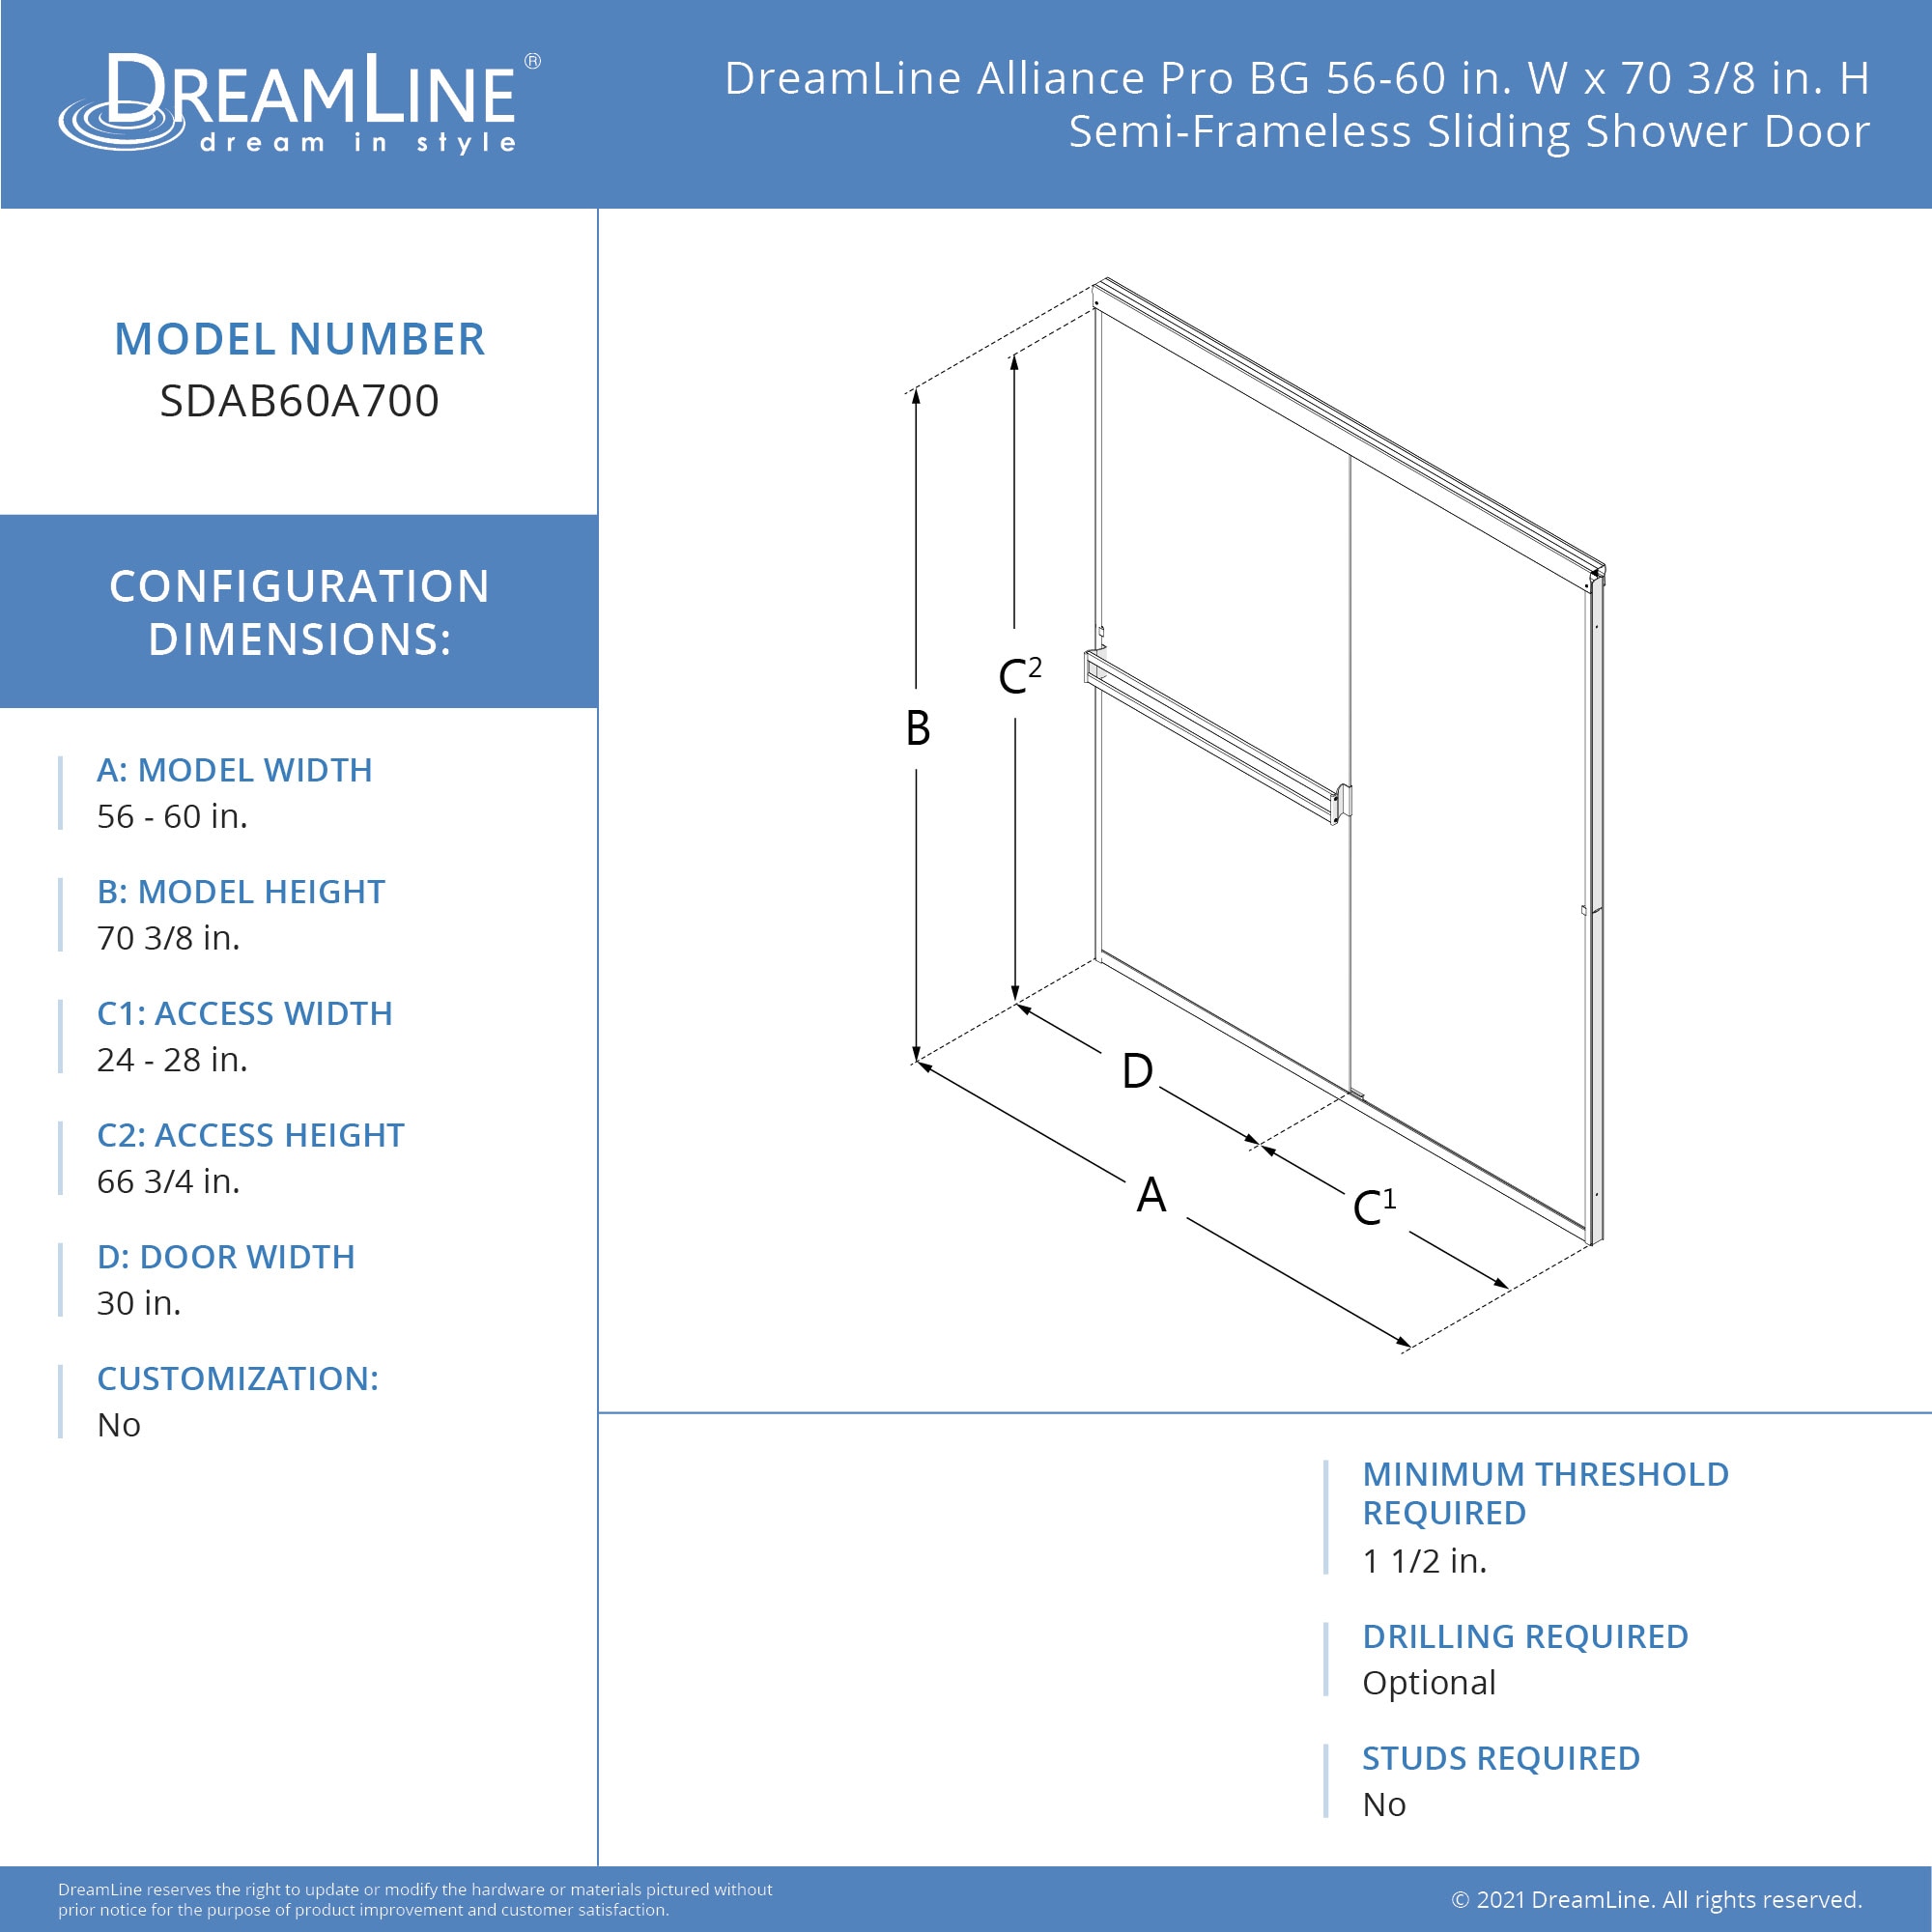 DreamLine Sdab60a700vxx01 Alliance Pro BG 56-60 inch W x 70 3/8 inch H Semi-Frameless Sliding Shower Door in Chrome